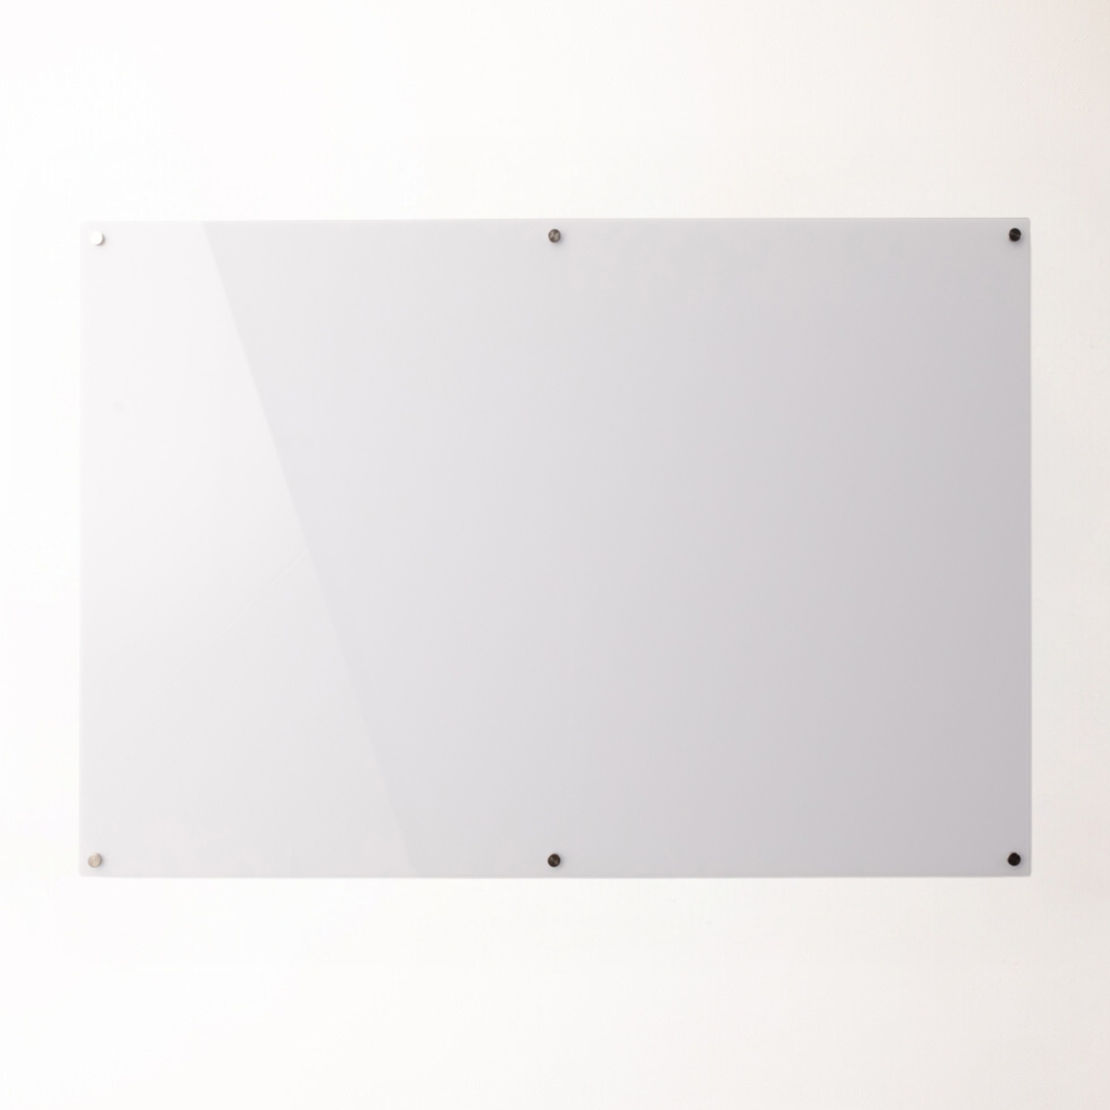 לוח זכוכית מחיק מגנטי צבע לבן בתלייה עם ברגים במגוון מידות כולל הובלה והתקנה